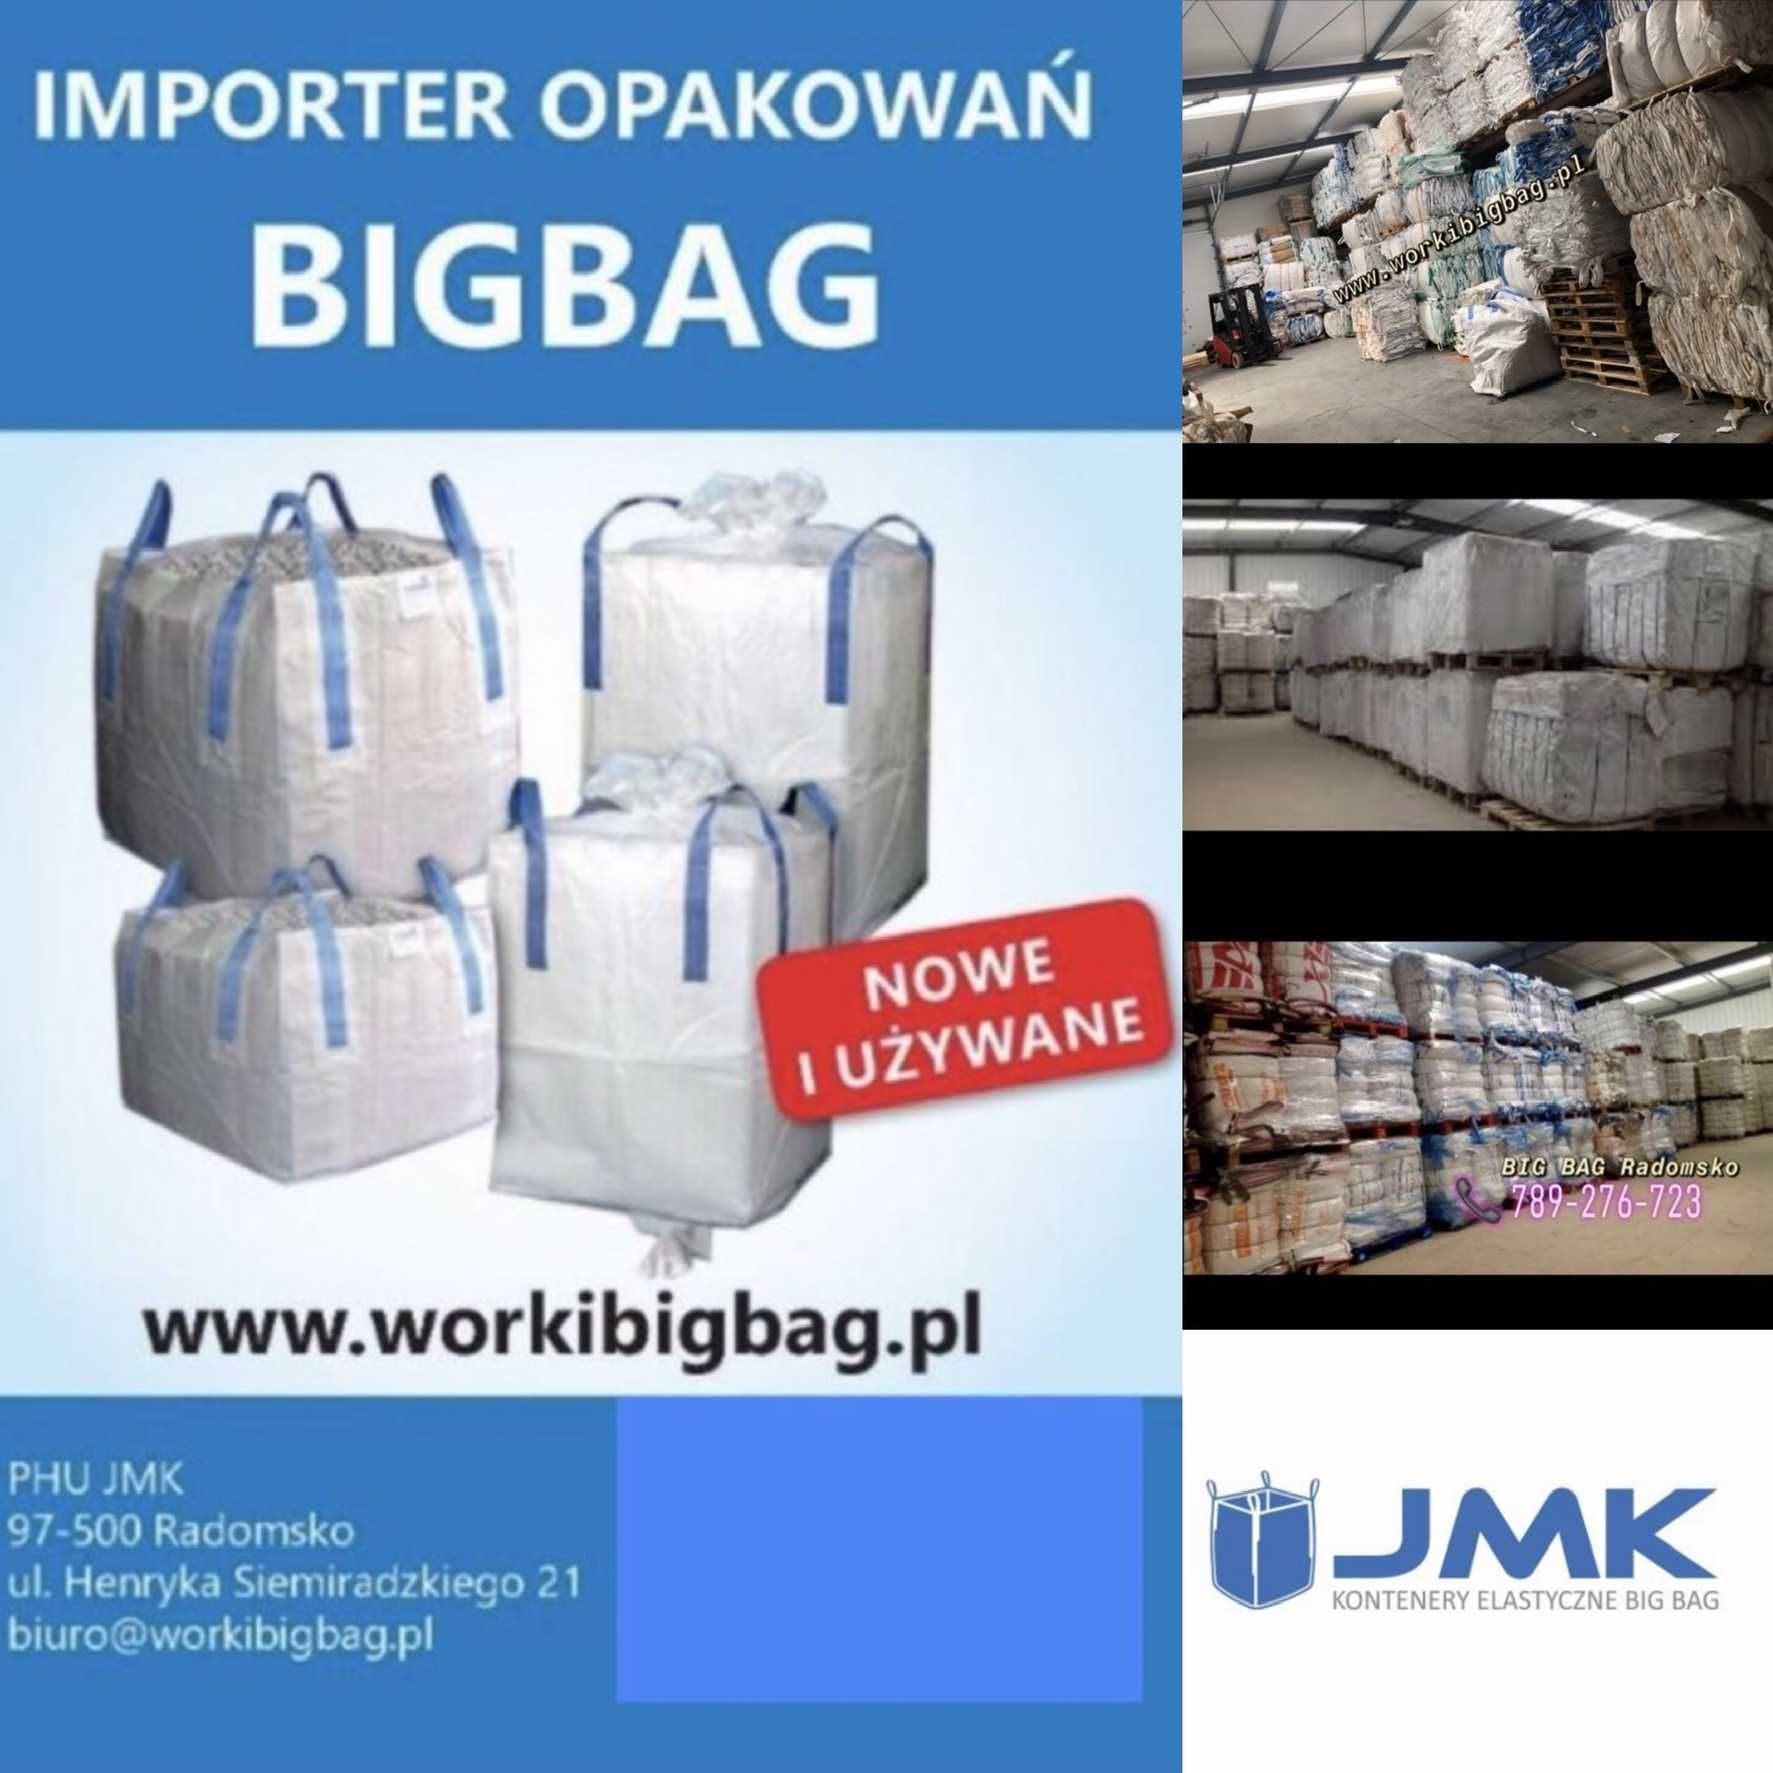 Worki Big Bag NOWE 220/95/95 Big Bag Bagi Wysyłka w 24h